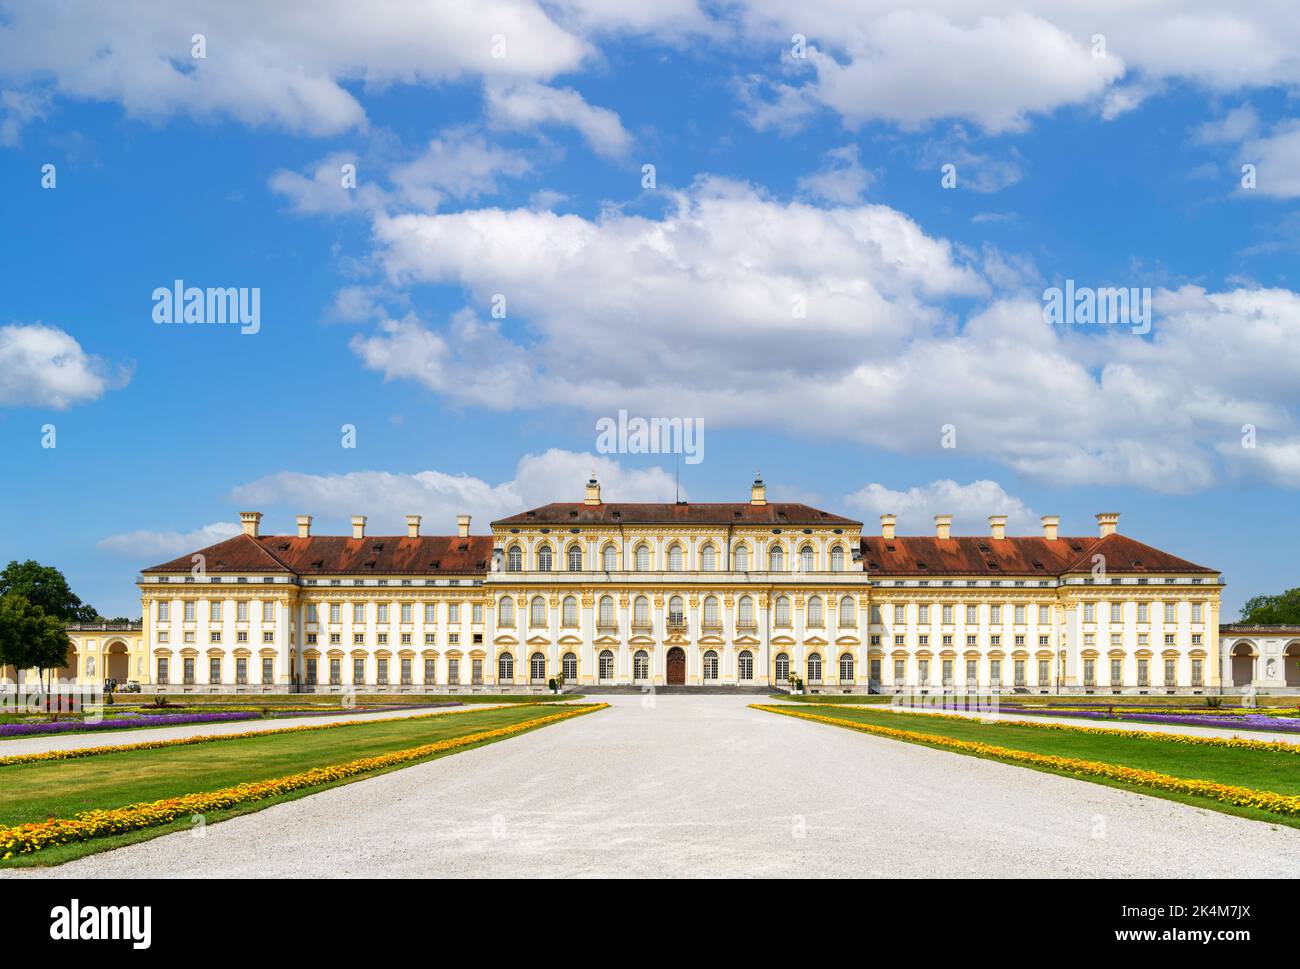 Neues Schloss Schleißheim, complejo palacio Schleissheim, Múnich, Baviera, Alemania Foto de stock